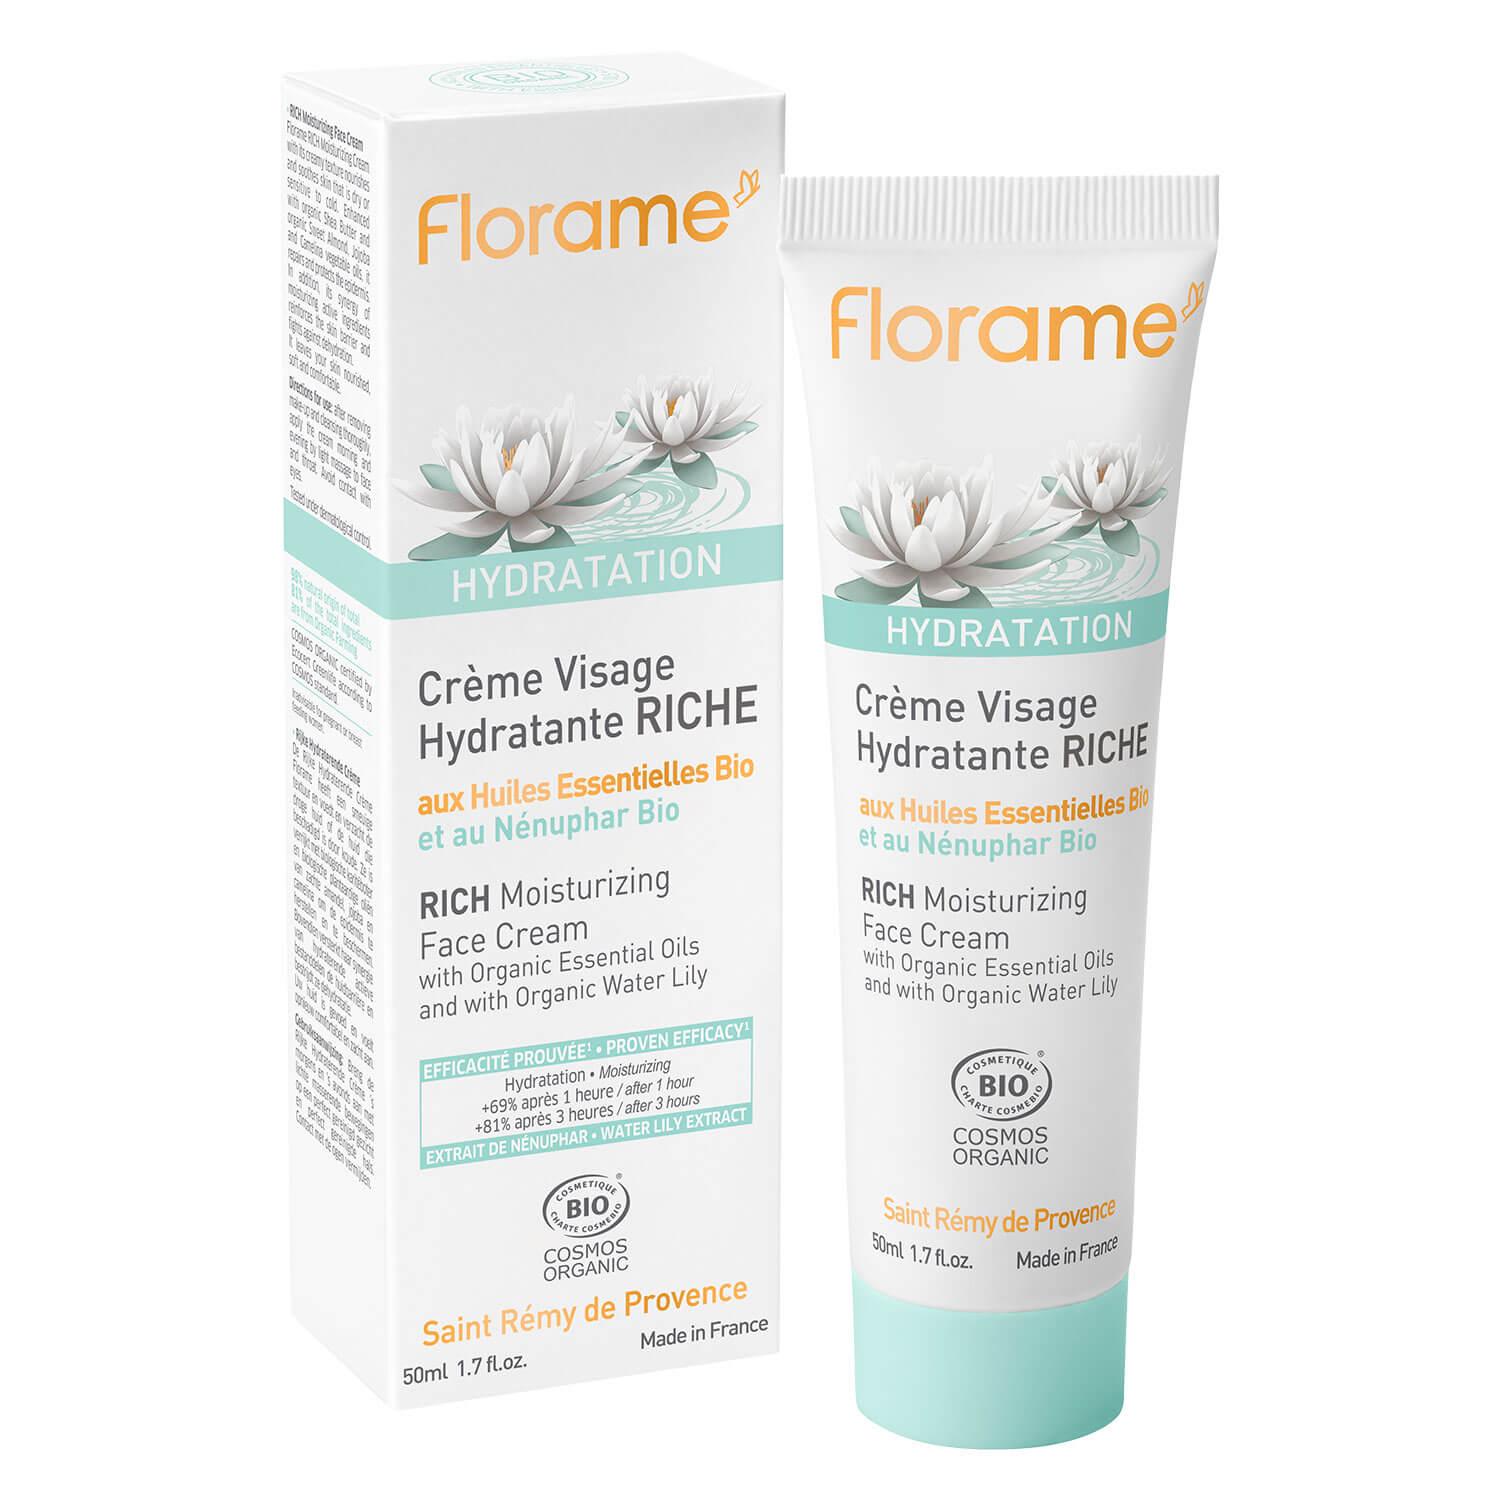 Florame - Crème visage hydratante RICHE